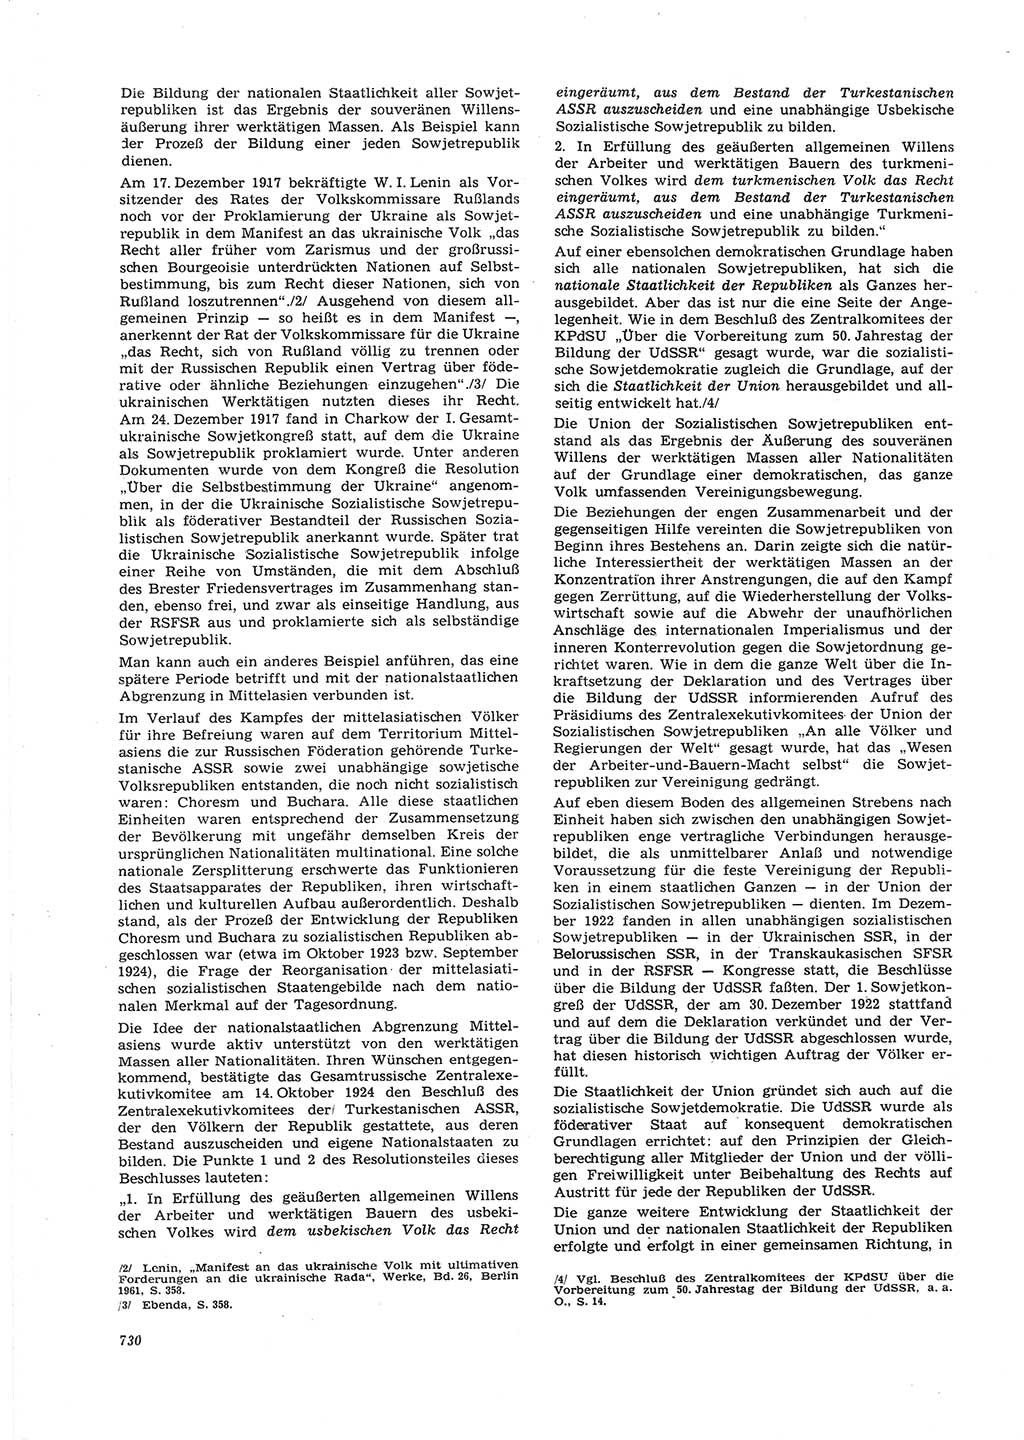 Neue Justiz (NJ), Zeitschrift für Recht und Rechtswissenschaft [Deutsche Demokratische Republik (DDR)], 26. Jahrgang 1972, Seite 730 (NJ DDR 1972, S. 730)